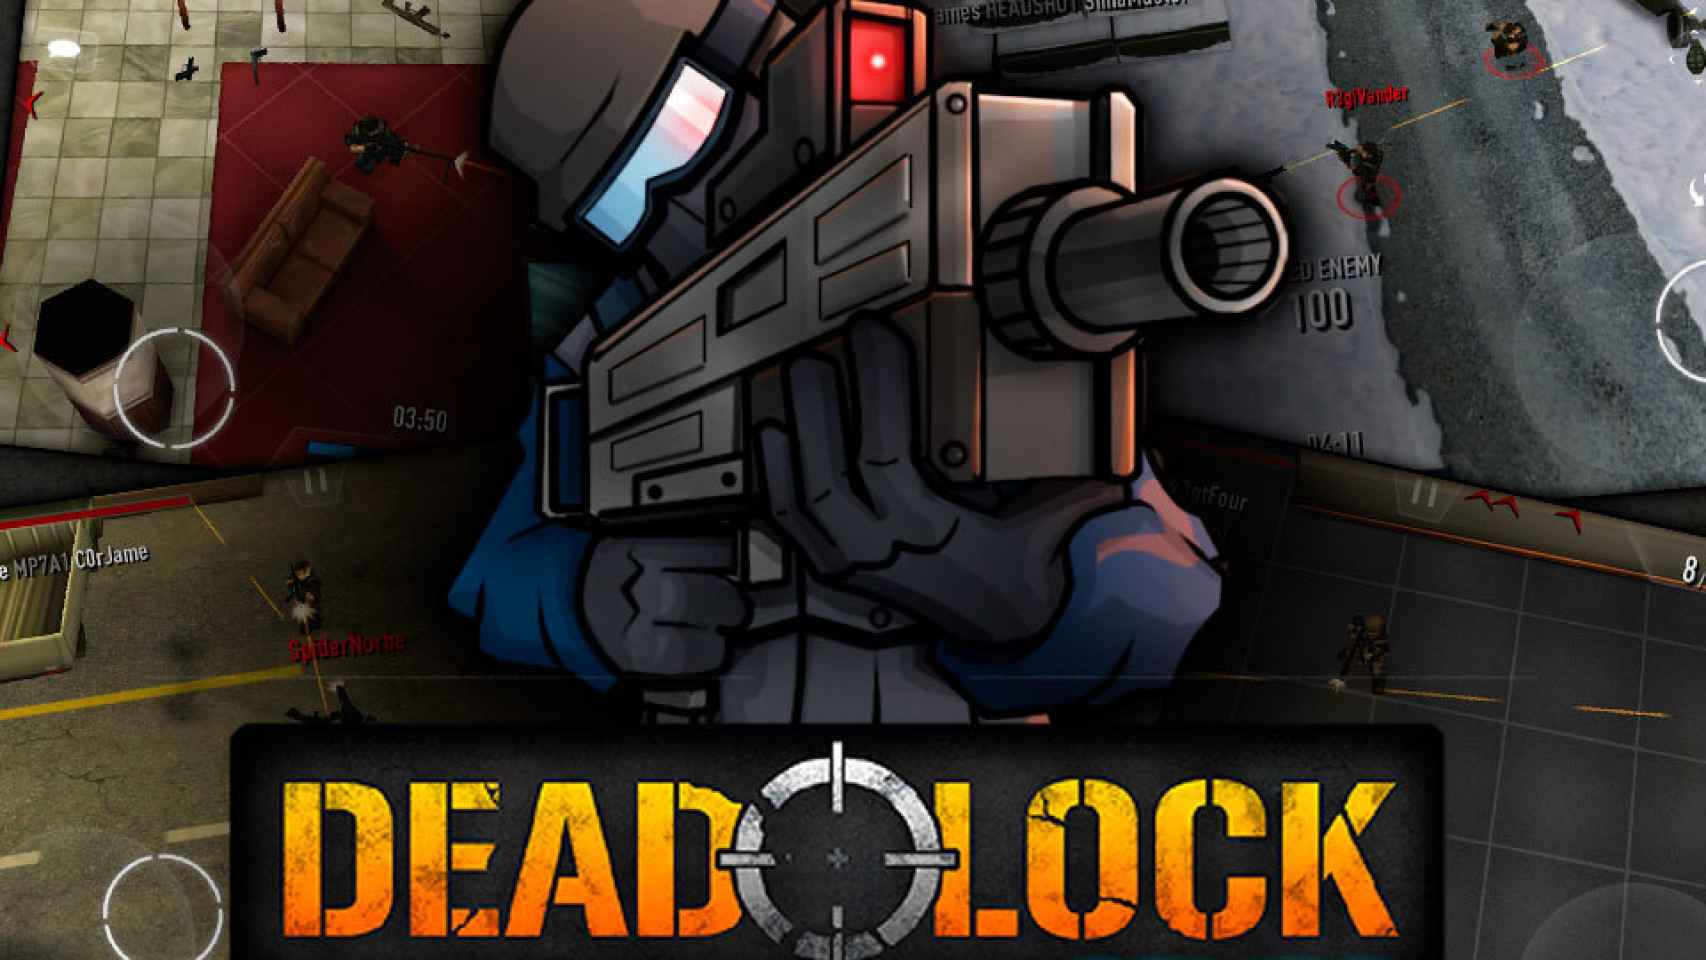 Deadlock Online llega a Android: el juego de disparos multiplataforma